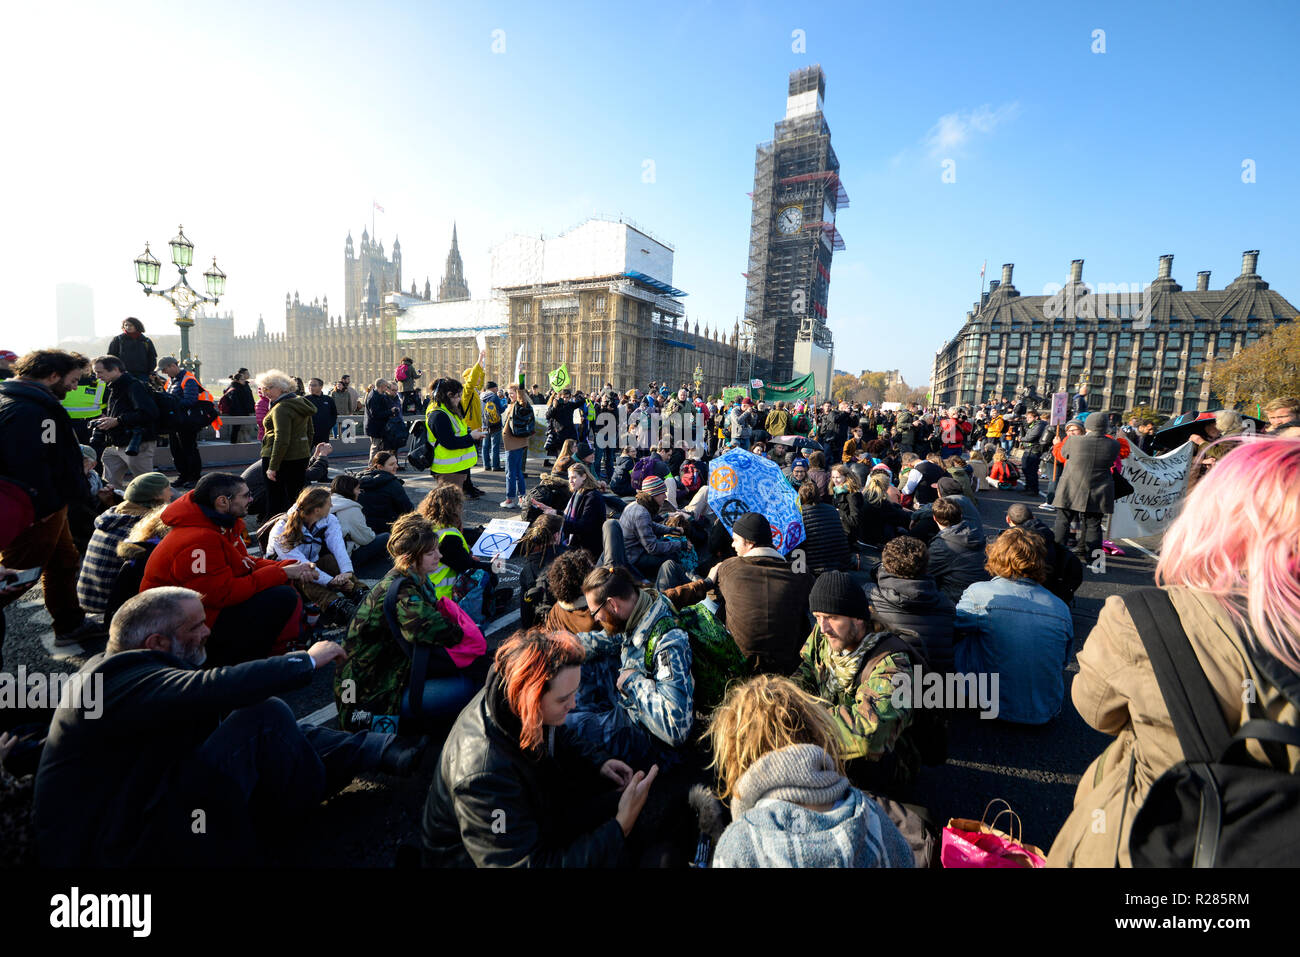 Die Westminster Bridge, London, UK. Organisiert vom Aussterben Rebellion, ein Protest ist unterwegs zu 'Rebel gegen die britische Regierung für strafrechtliche Untätigkeit im Angesicht des Klimawandels Katastrophe und ökologischen Kollaps". Demonstranten blockieren die Themse von Westminster, Waterloo, Southwark, Blackfriars und Lambeth damit zu unterbrechen. Stockfoto